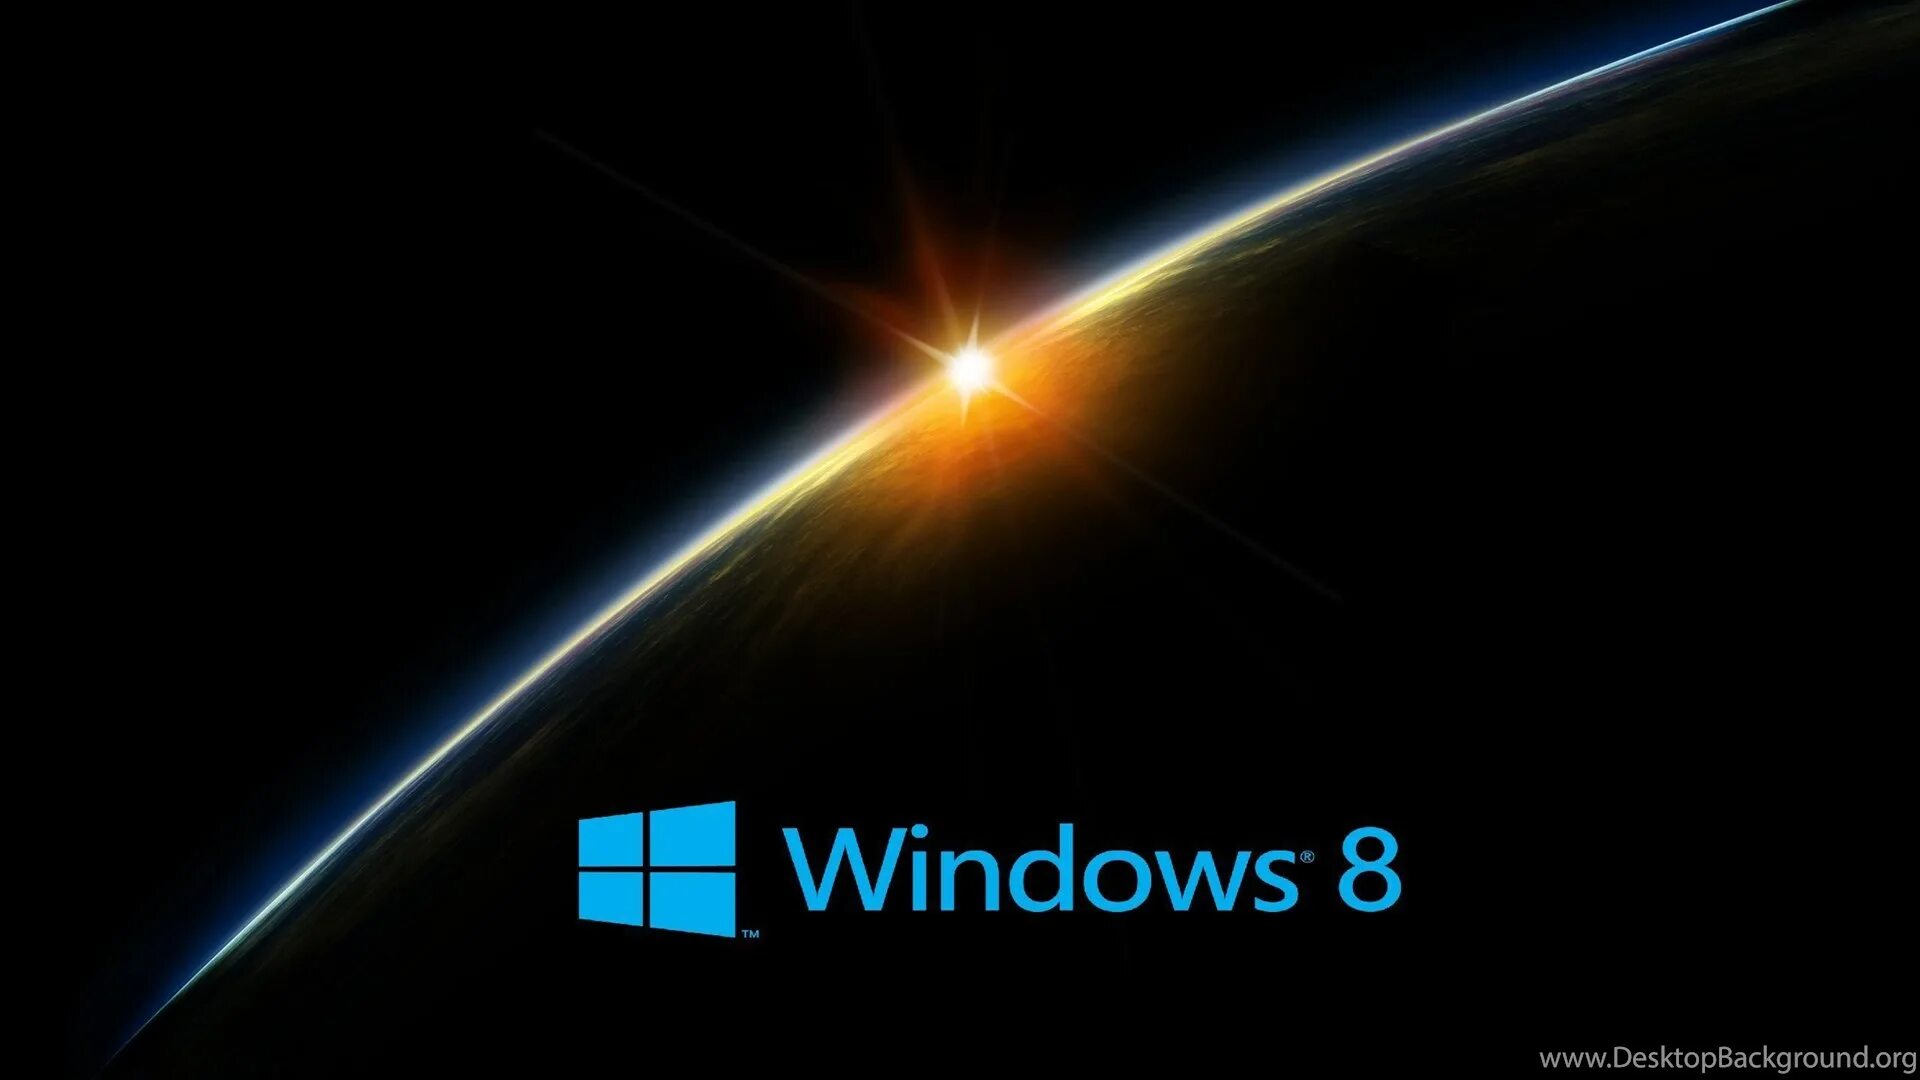 Best windows. Заставка виндовс 8. Windows 8.1 рабочий стол. Заставка виндовс 8.1. Красивые фоны для рабочего стола Windows 8.